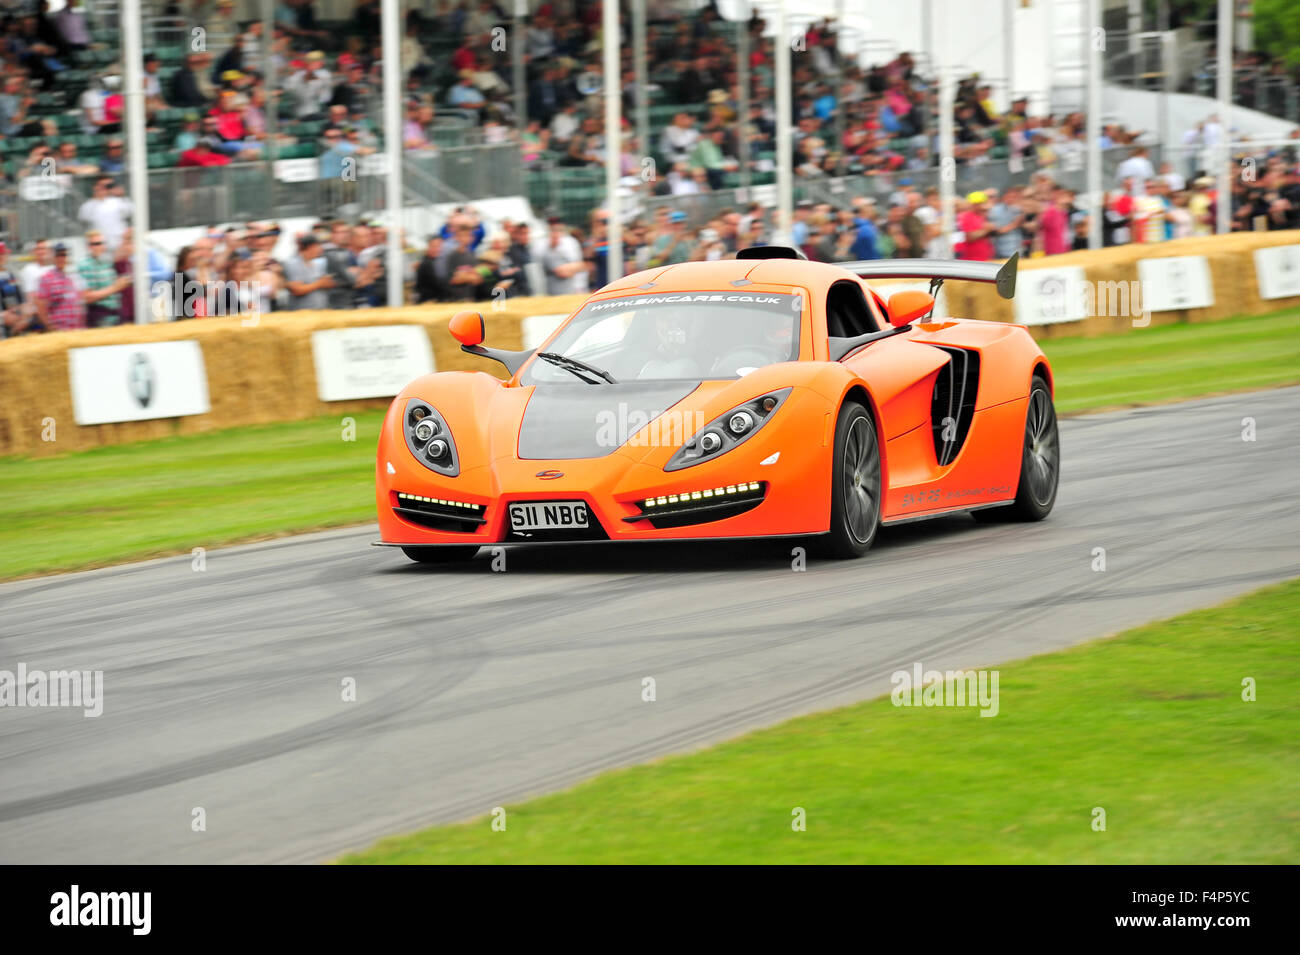 Une orange Sin R1 supercar au Goodwood Festival of Speed au Royaume-Uni. Banque D'Images